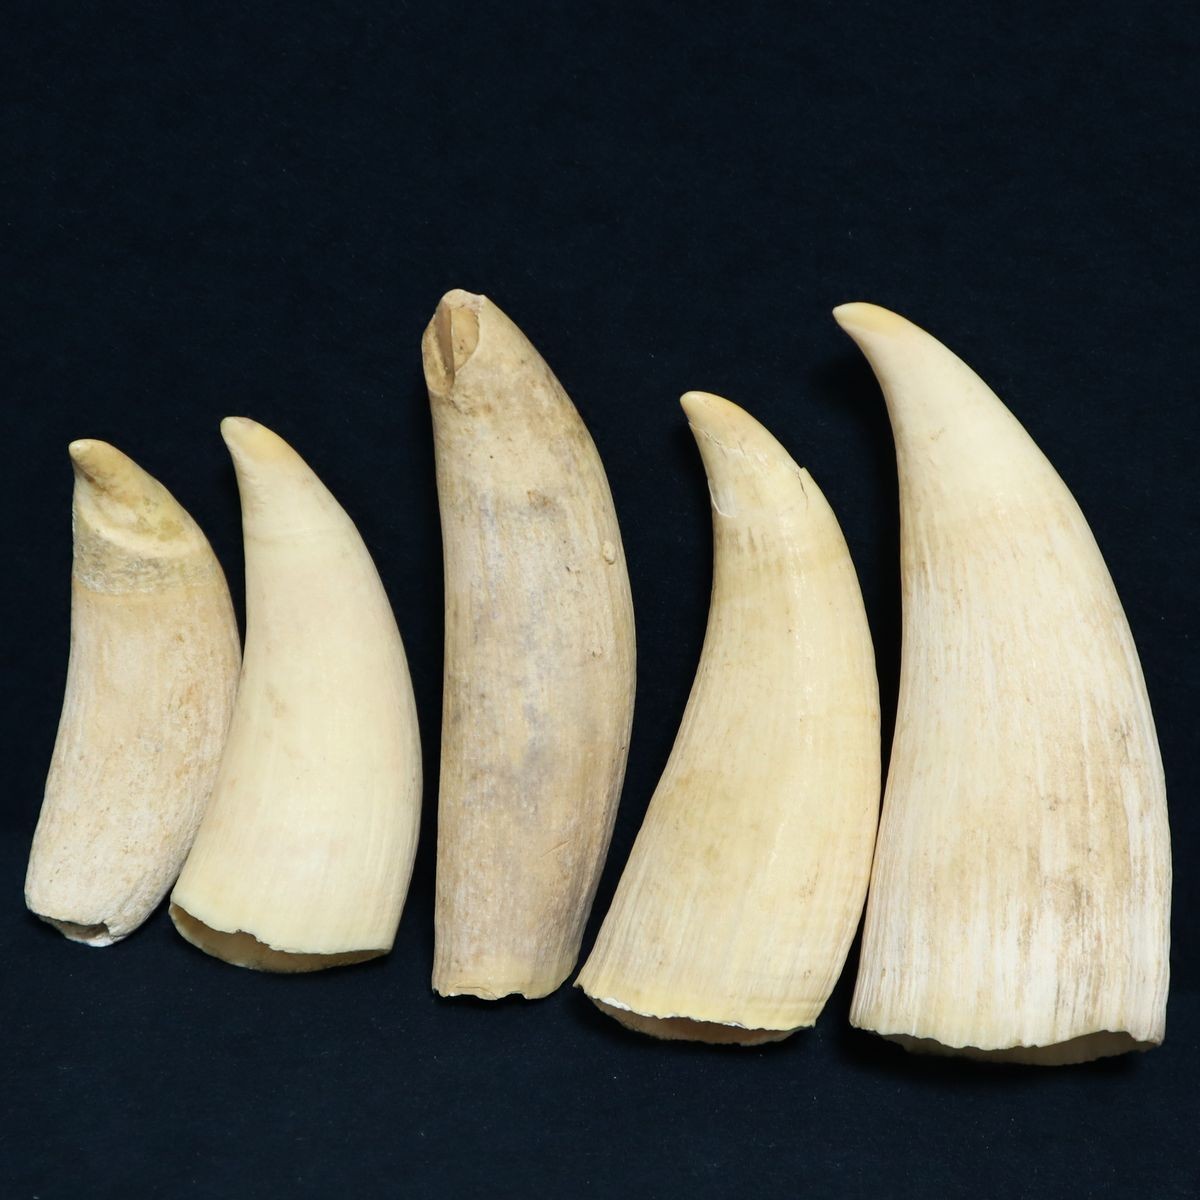 鯨歯 クジラの歯 牙 マッコウクジラ 標本 249g | gkcsu.org